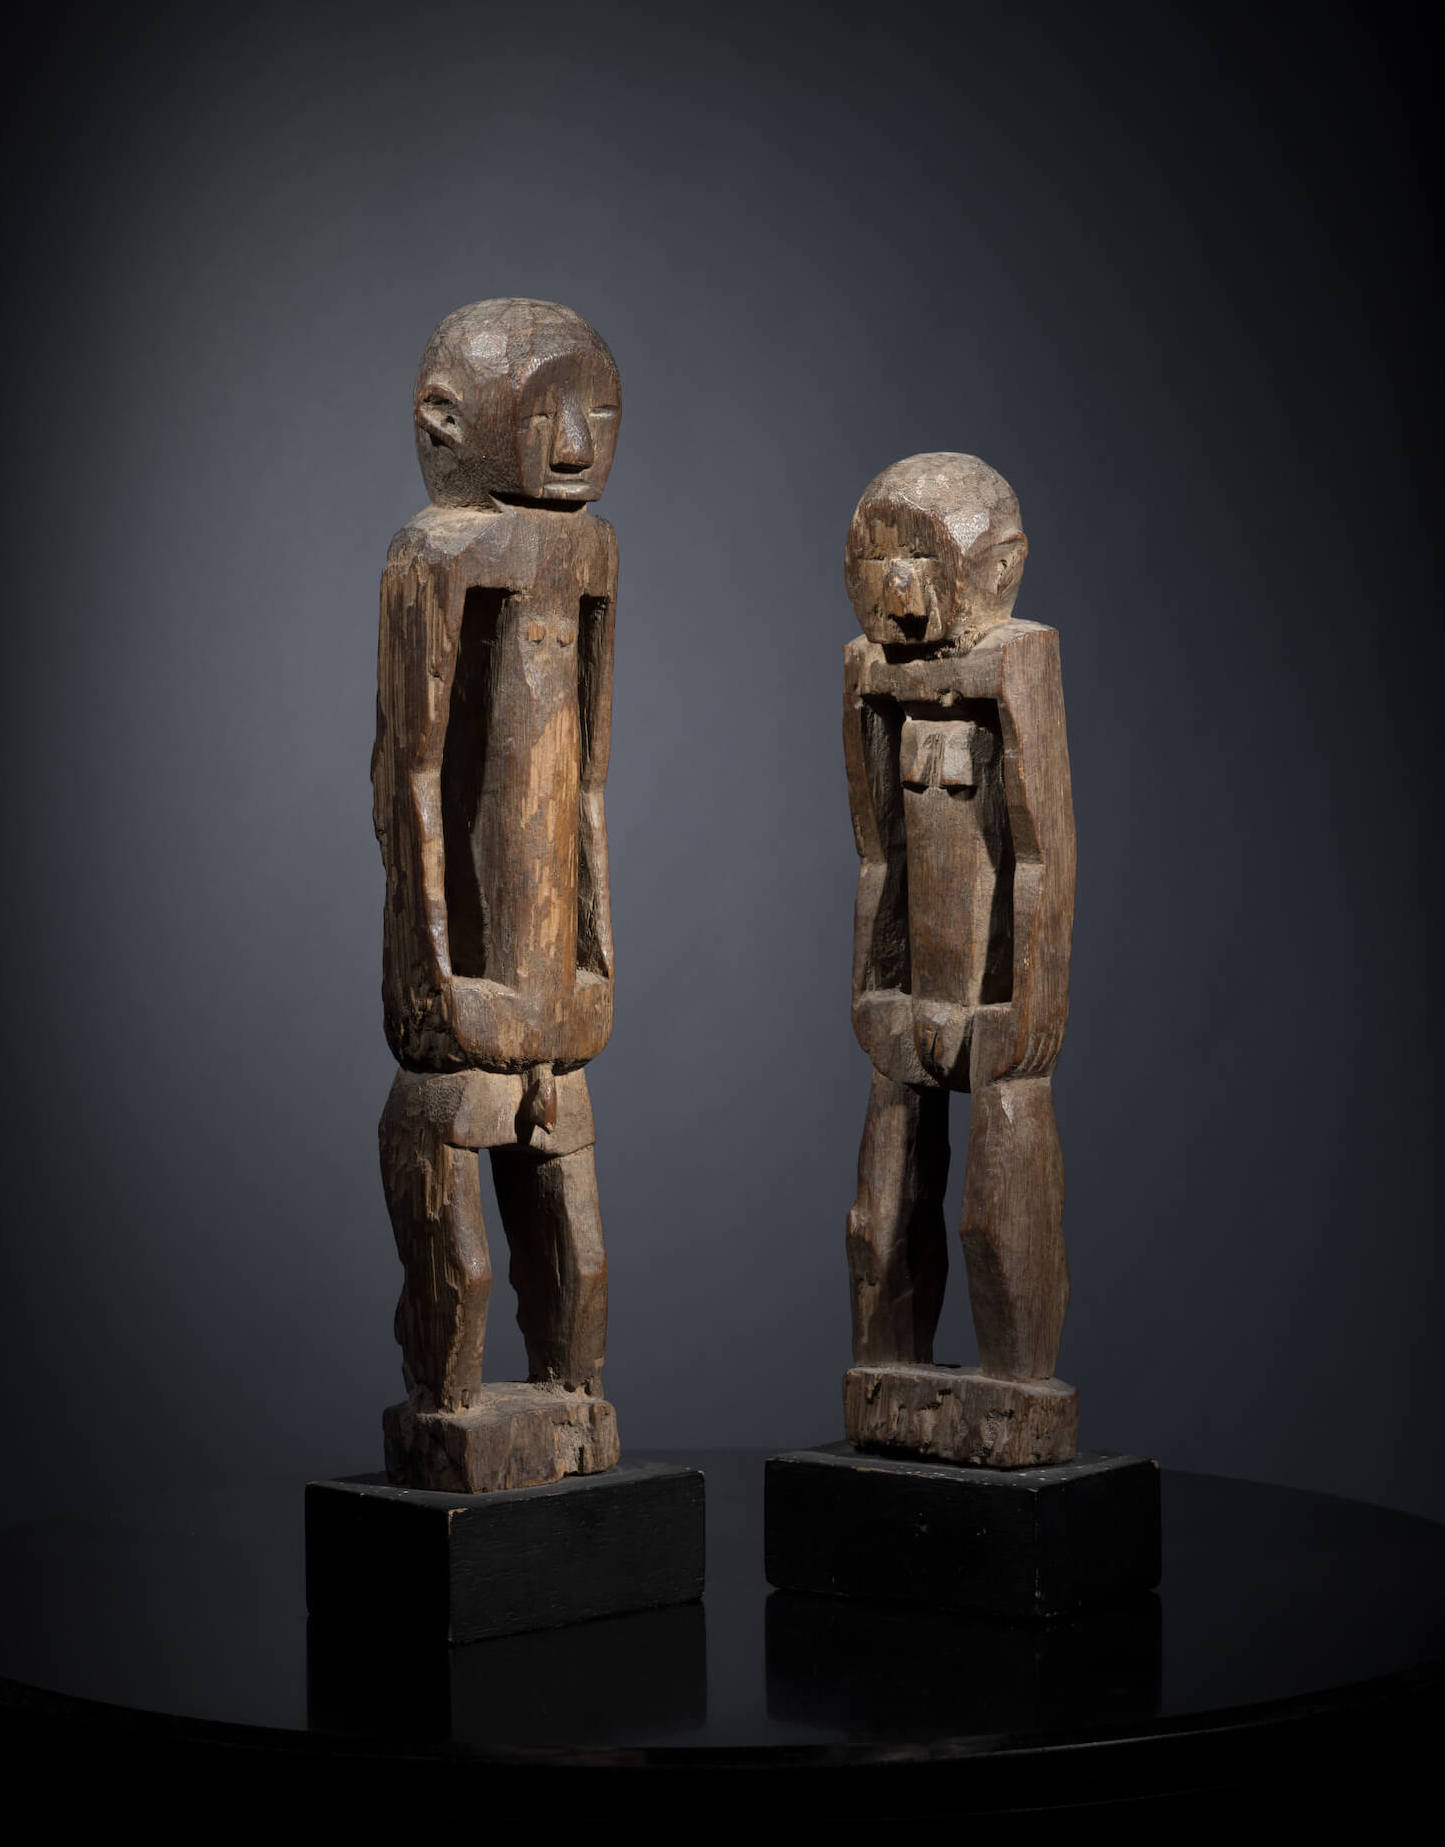 Vysoce stylizované skulptury zobrazující rofové předky, Nigérie - Tribal art | Planeta lidí